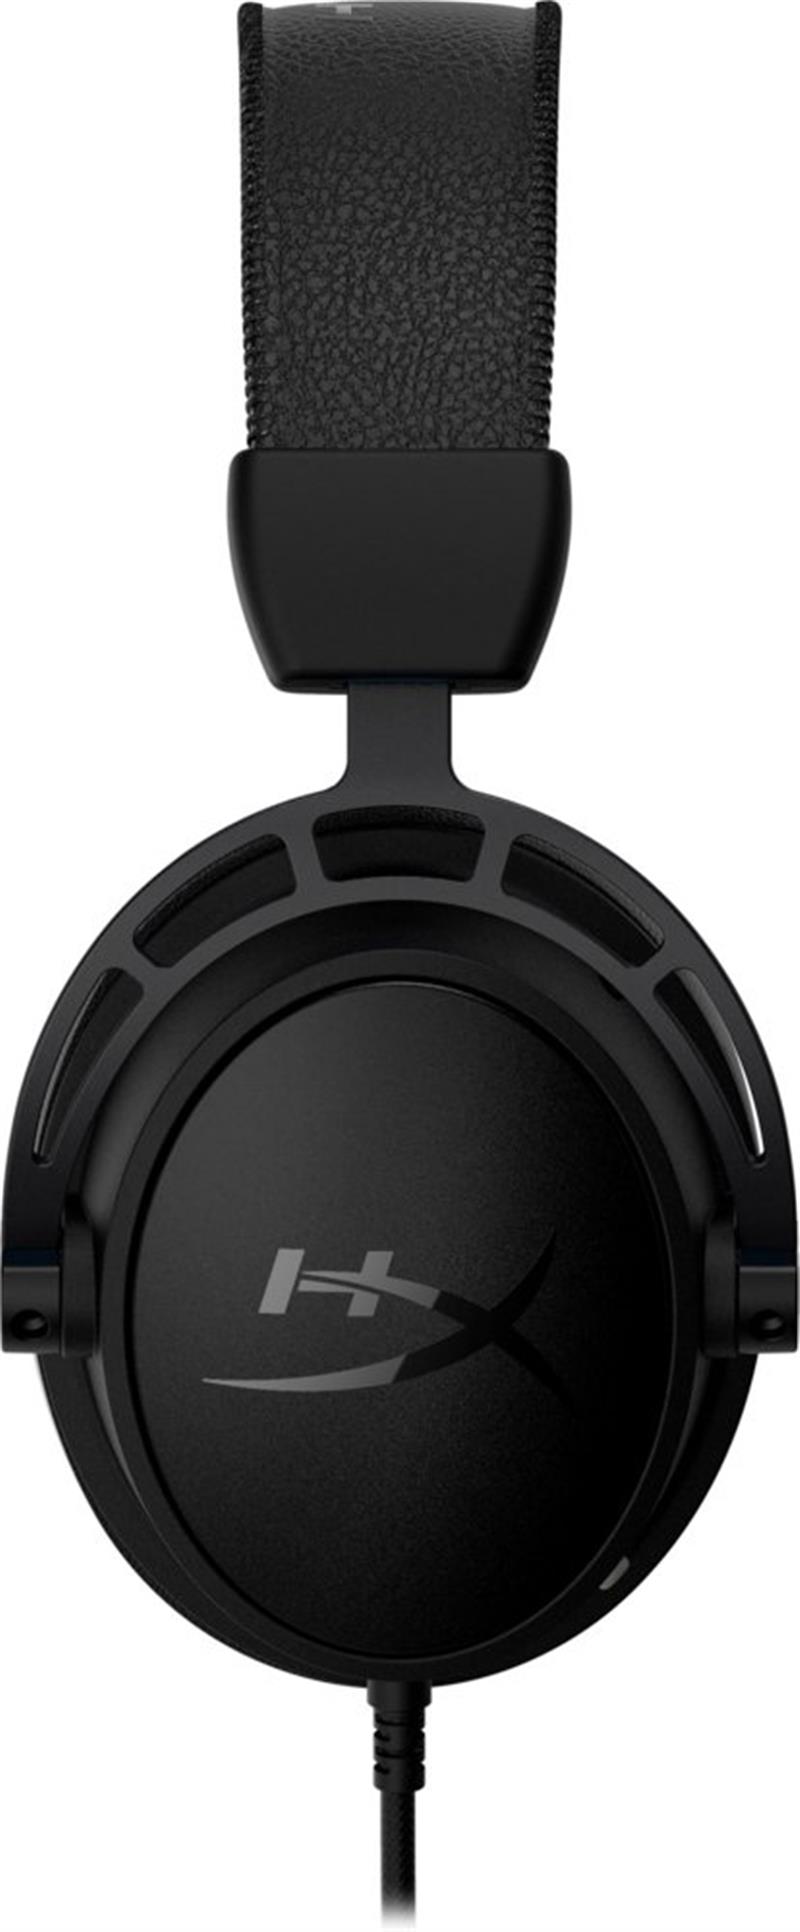 HP HyperX Cloud Alpha S - Gaming Headset (Black) Hoofdtelefoons Bedraad Hoofdband Gamen Zwart